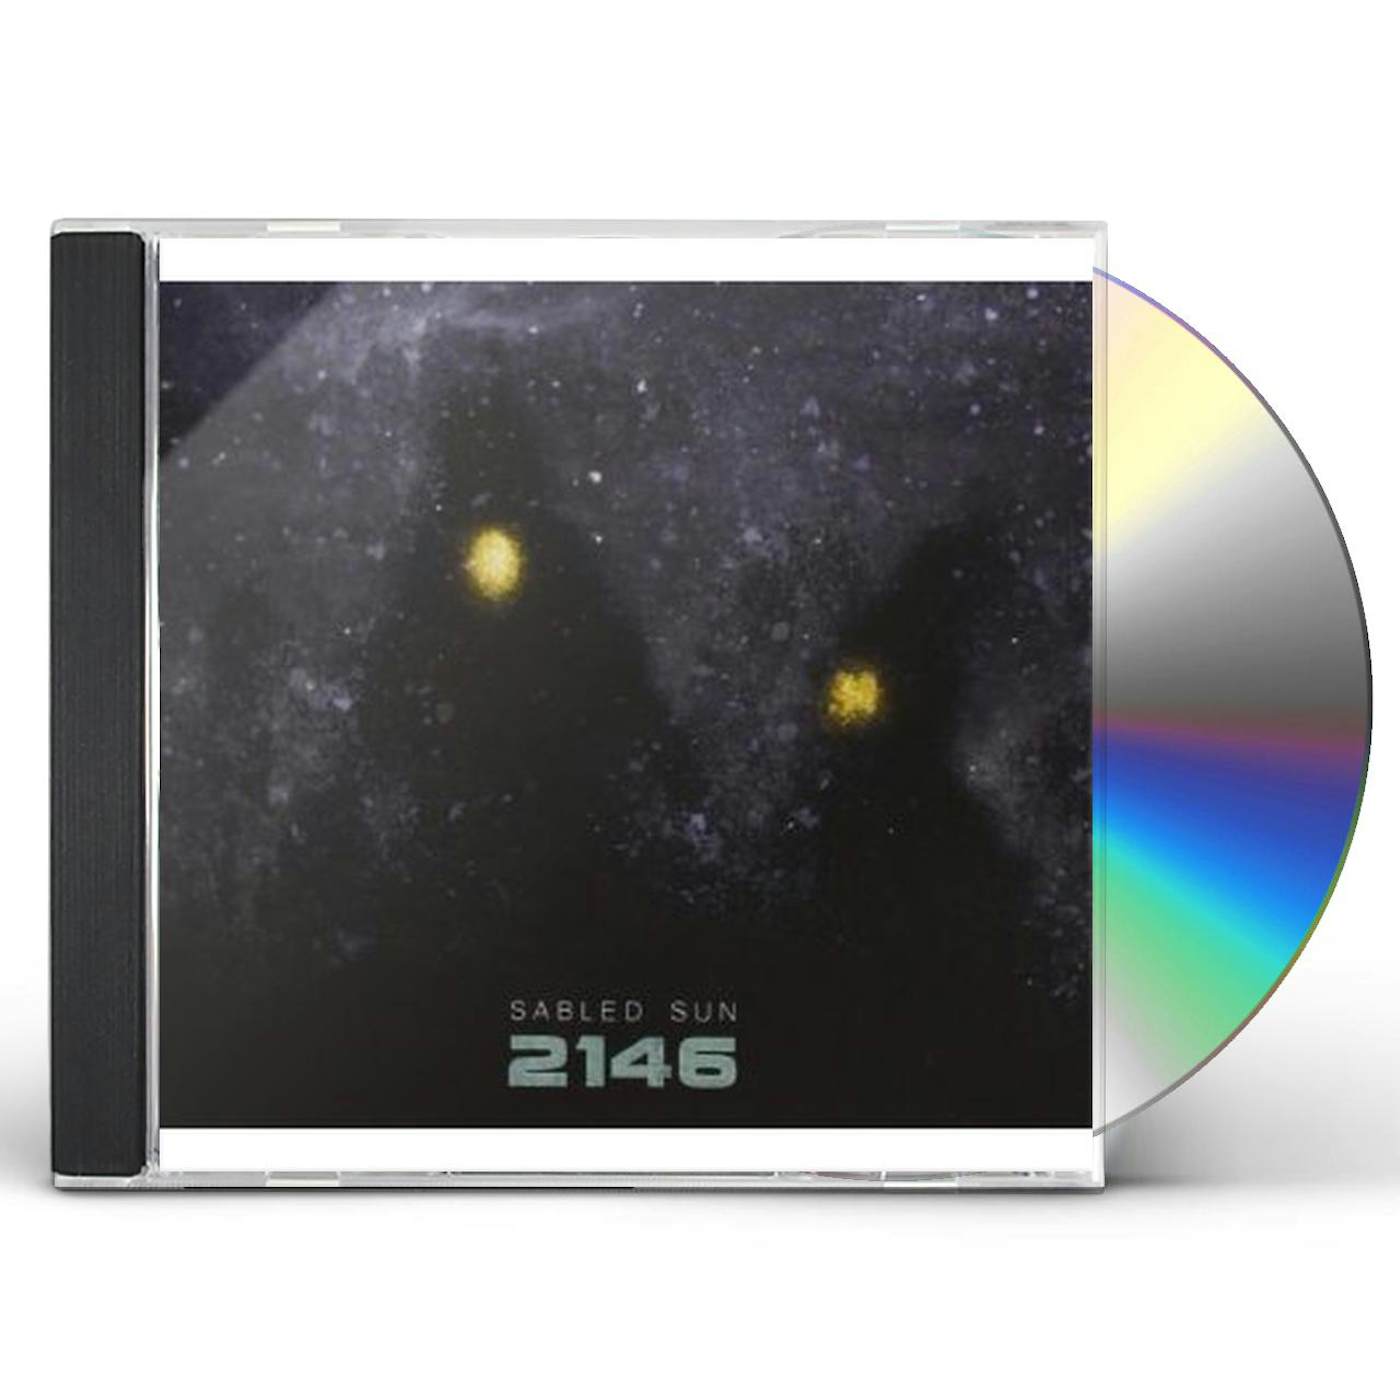 Sabled Sun 2146 CD